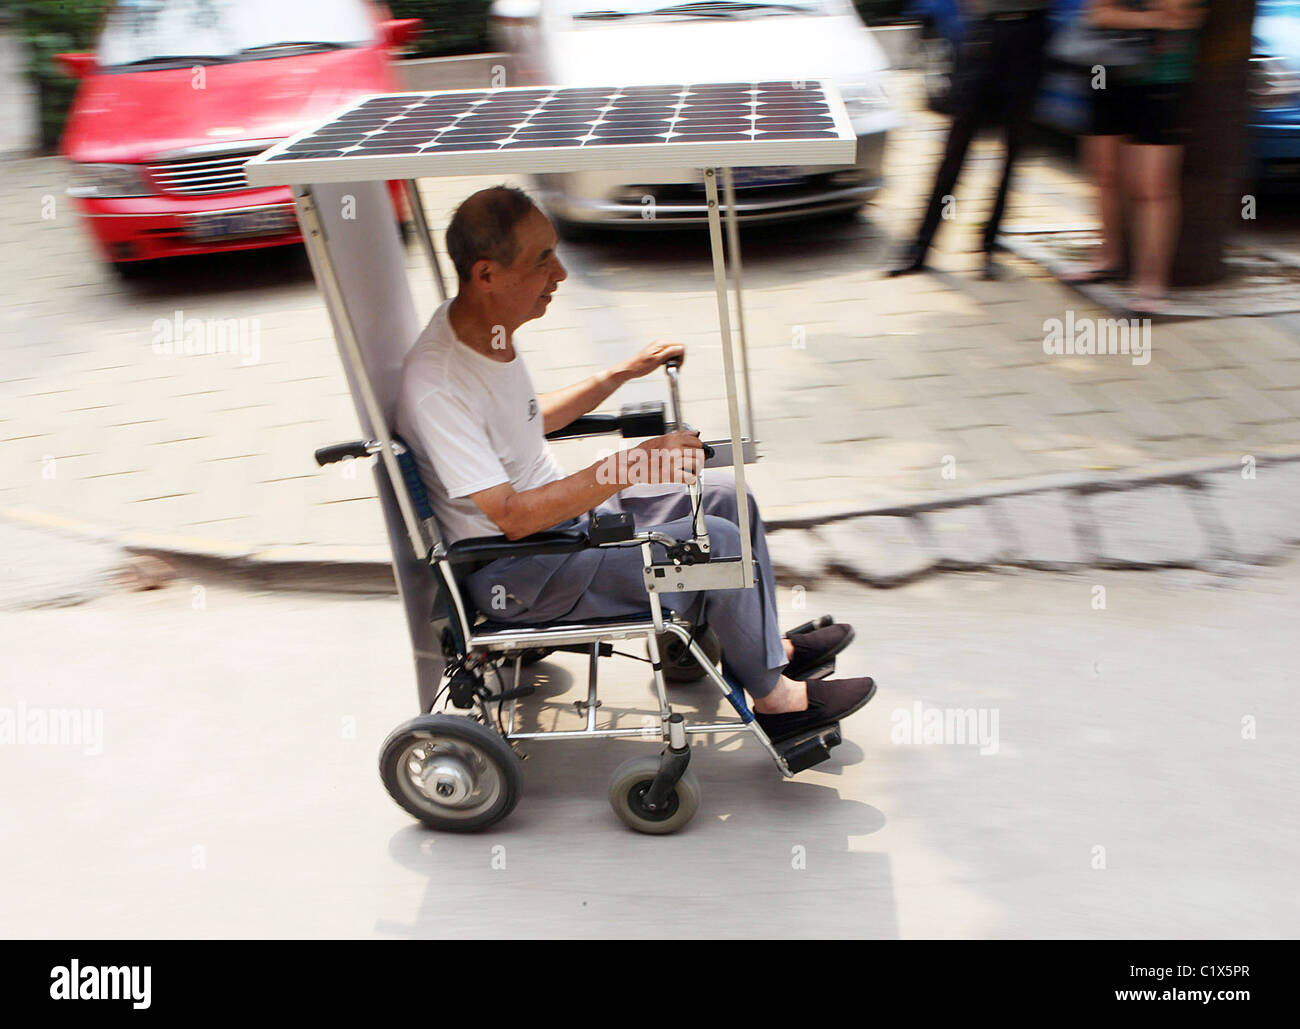 solar-angetriebene-rollstuhl-eco-friendly-achtzigjahrigen-zhao-tianyun-hat-seine-eigene-sonne-angetriebenen-rollstuhl-entwickelt-die-er-fahrt-c1x5pr.jpg